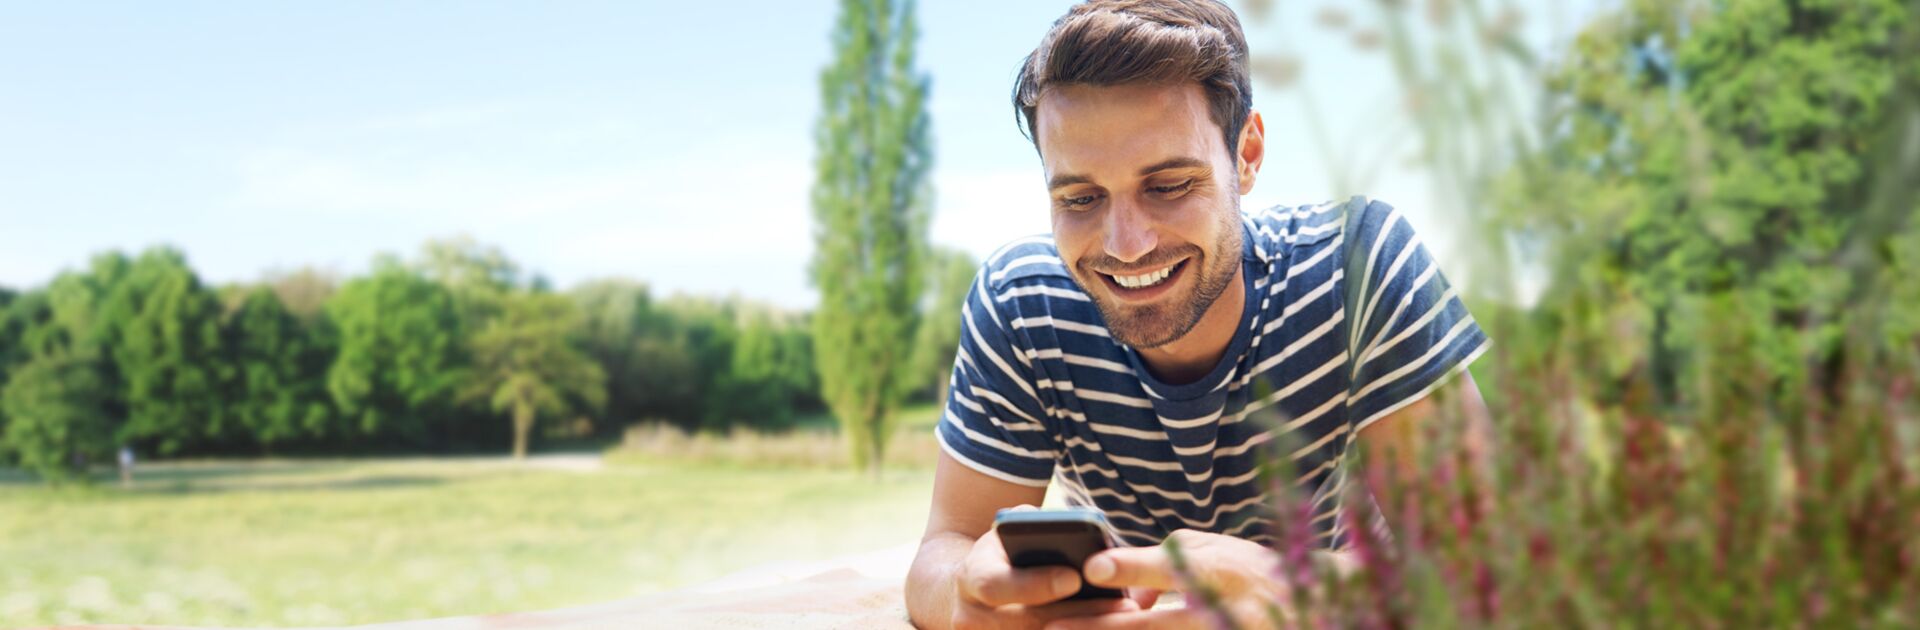 Ein glücklicher Mann, auf einer Wiese liegend und mit eine Smartphone in der Hand